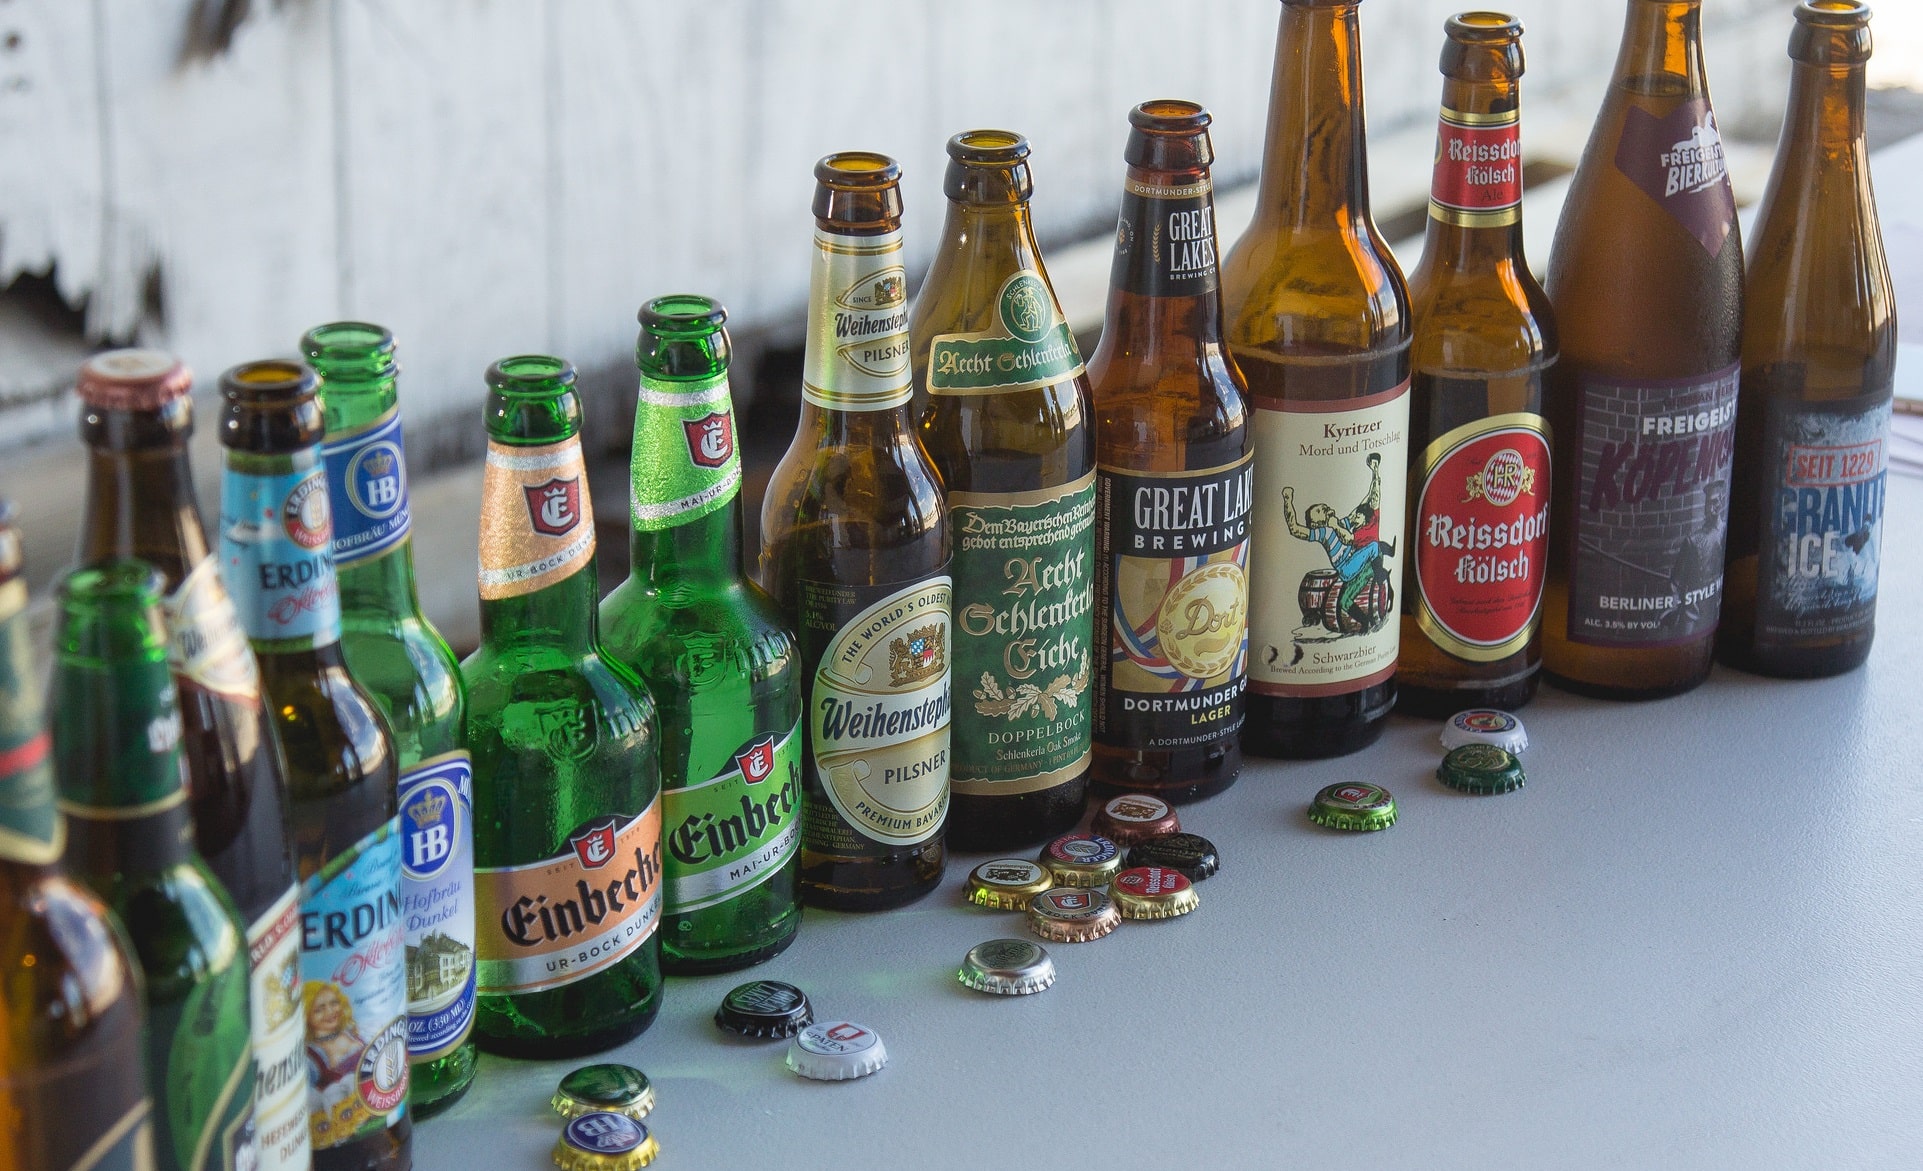 Berliner Kindl Brauerei BERLINER KINDL EXPORT beer label GERMANY